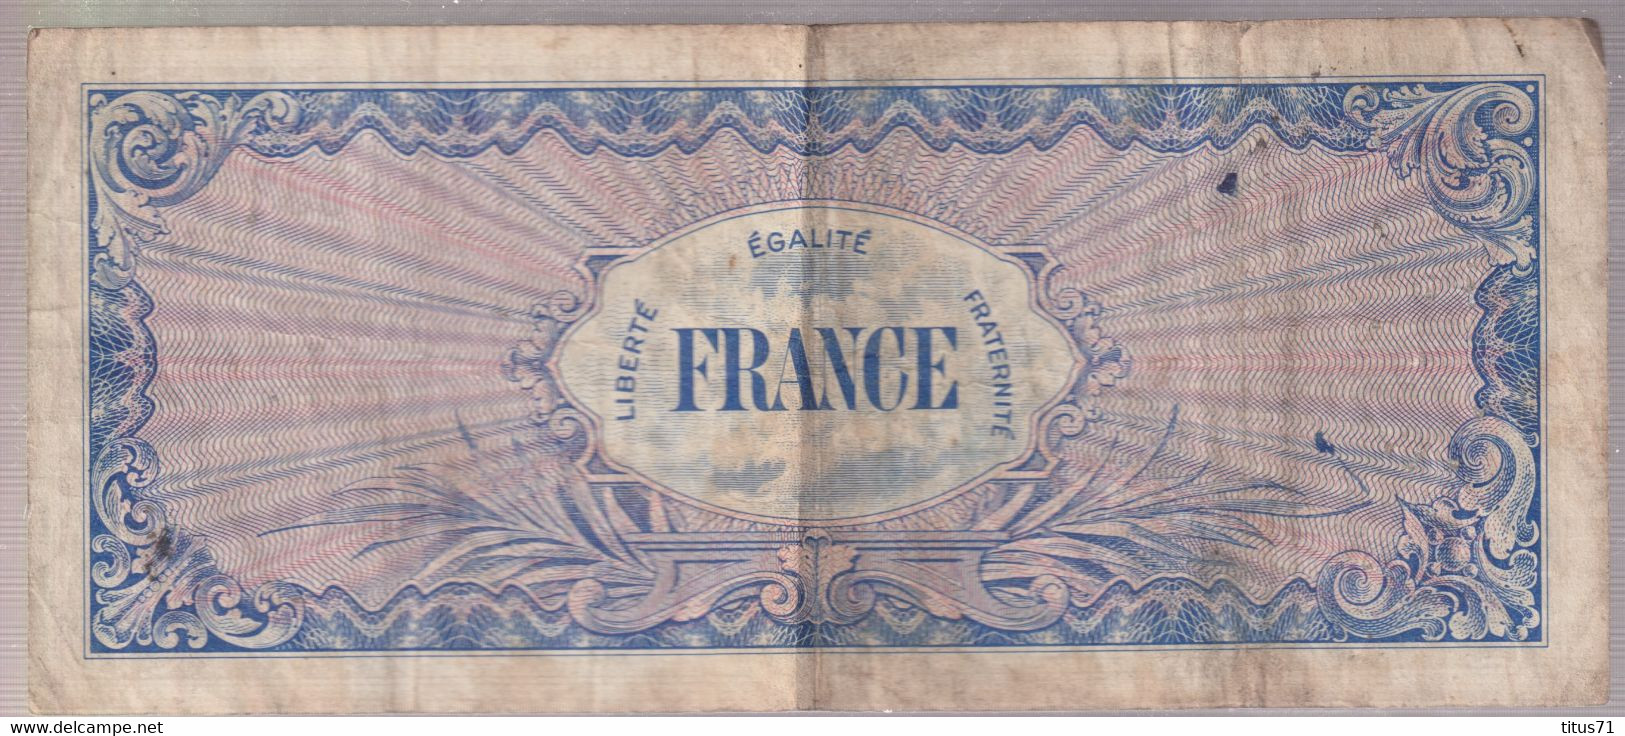 Billet 100 Francs Verso France 1945 Série 6 - 1945 Verso France